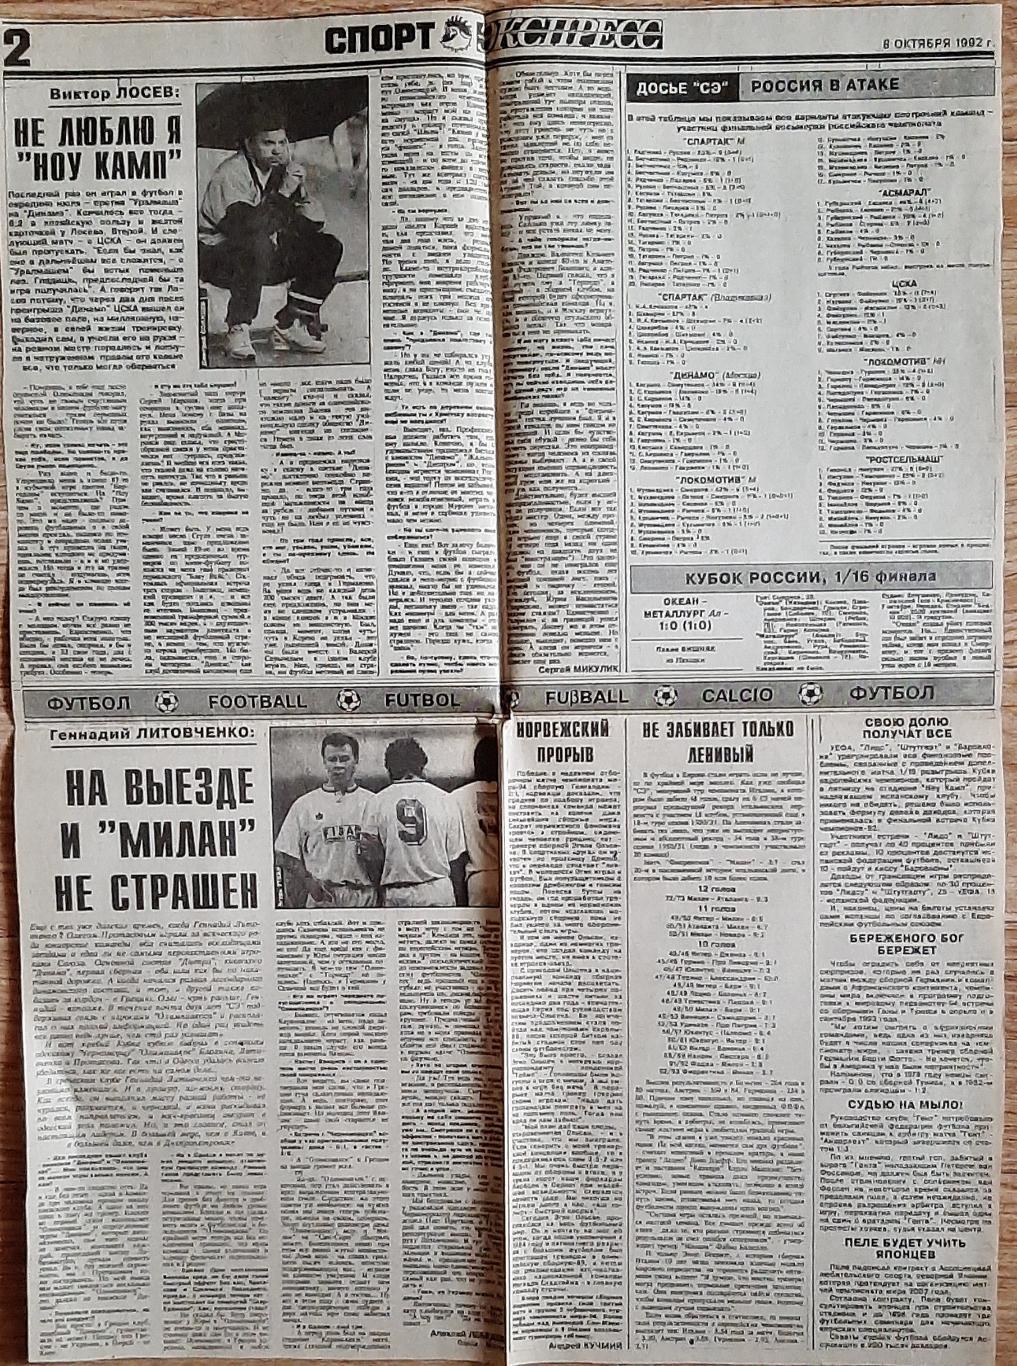 Вирізка з газети Спорт експрес #193 (8 жовтня 1992) 1